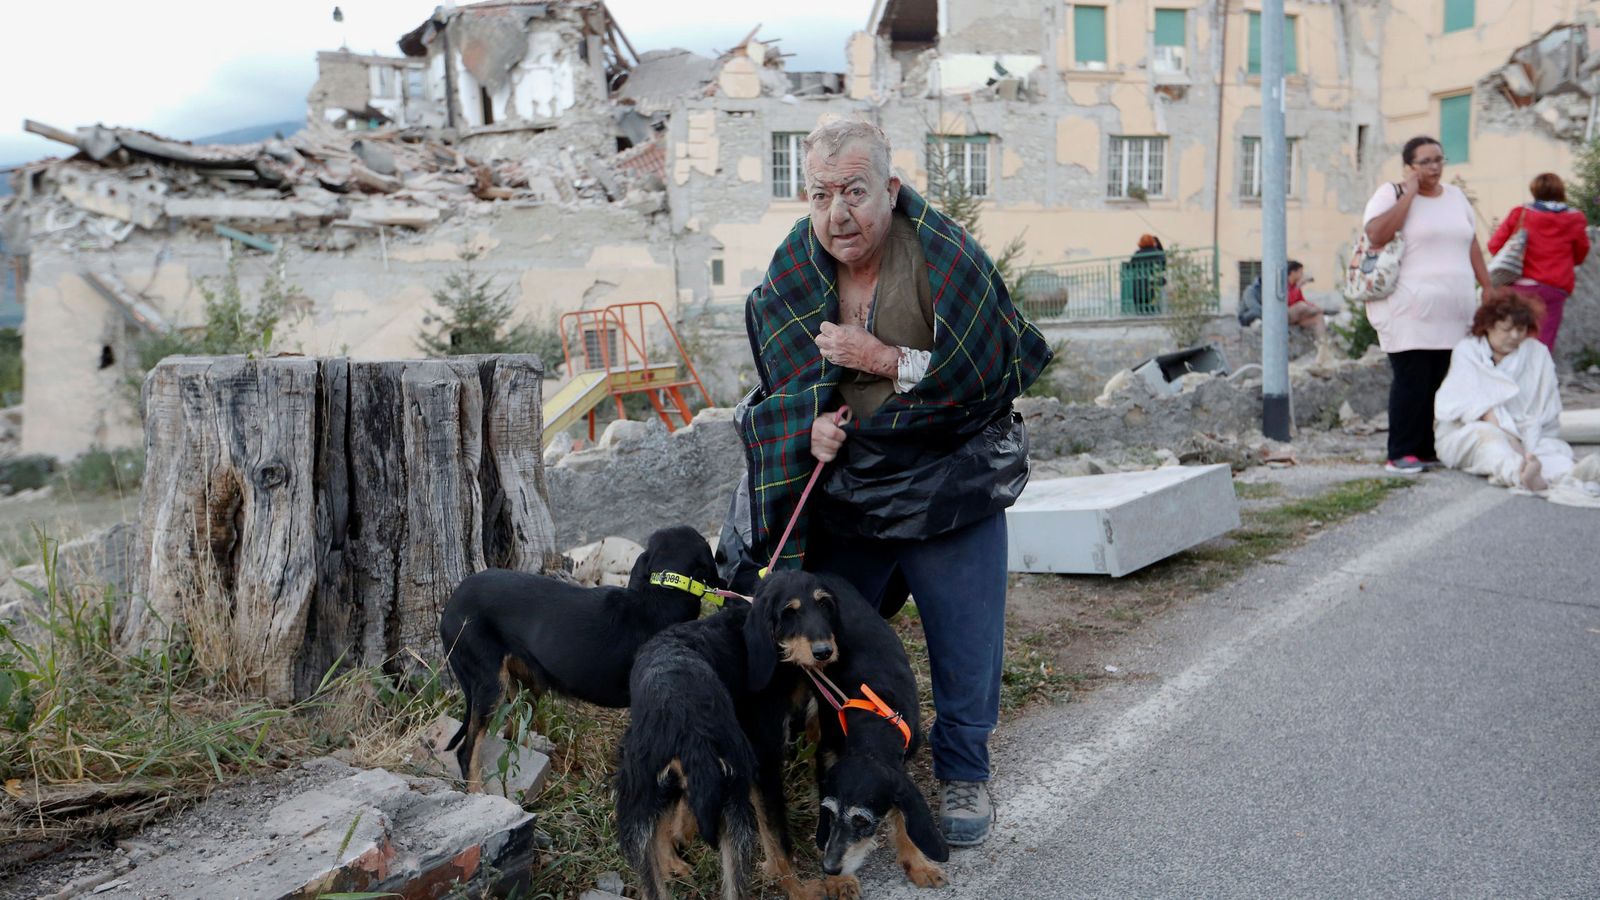 Foto: Un hombre protege a sus perros tras el terremoto en Amatrice, el 24 de agosto de 2016 (Reuters)